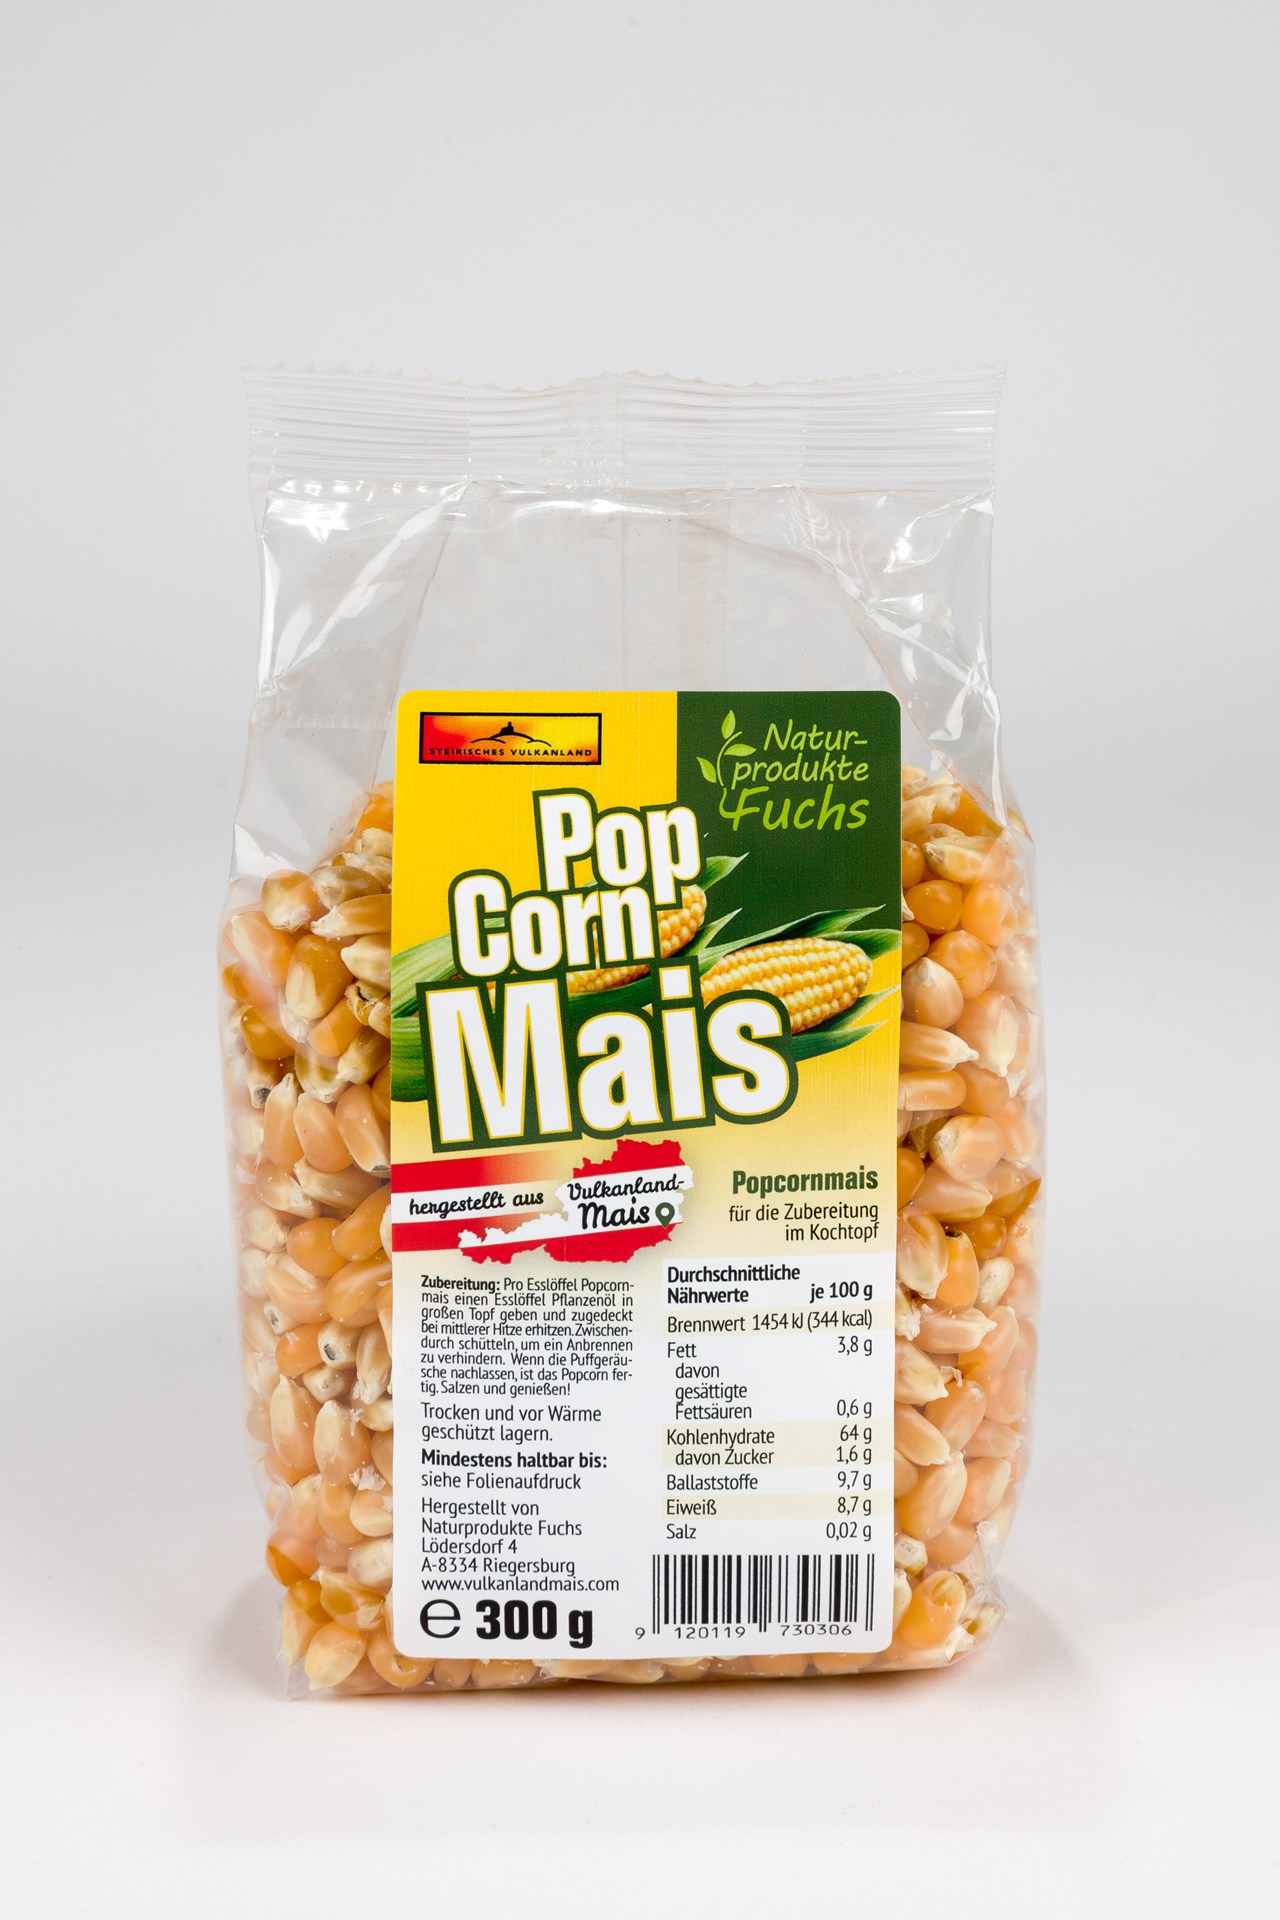 Naturprodukte Fuchs Produkt-Beispiele Popcornmais